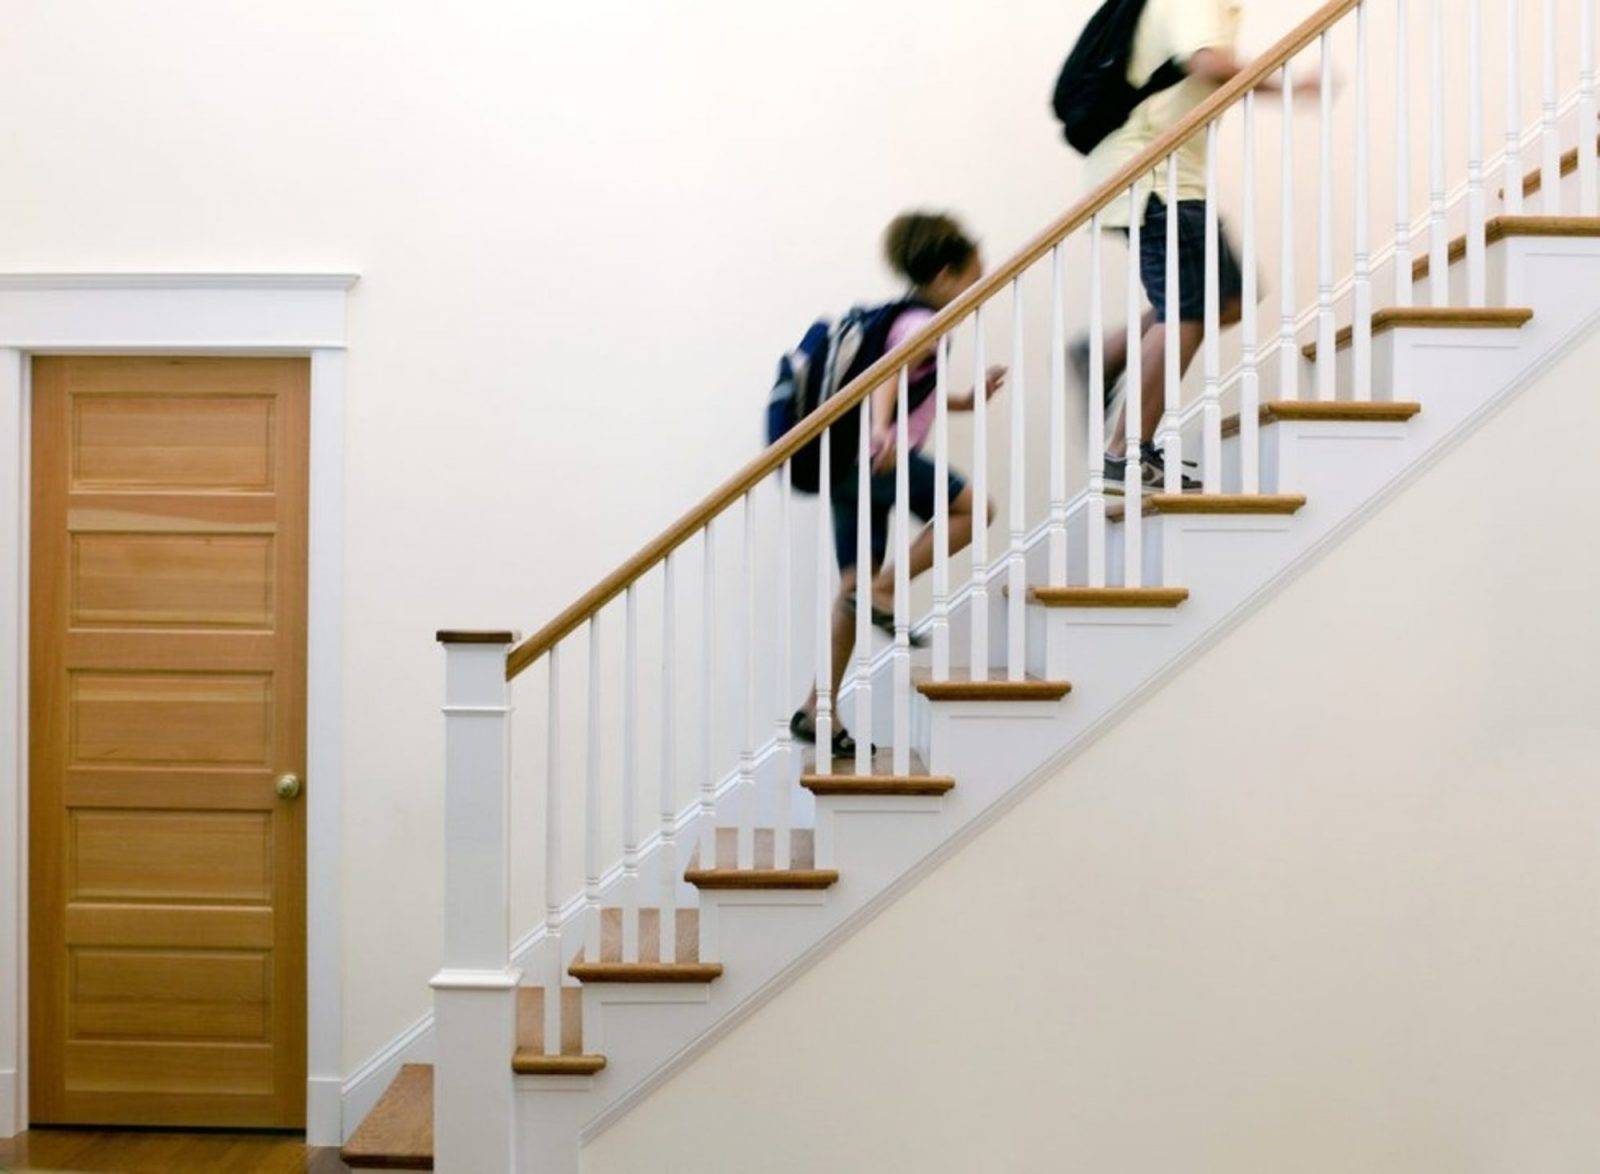 Безопасность в доме: выбираем и устанавливаем защиту на лестницу от детей